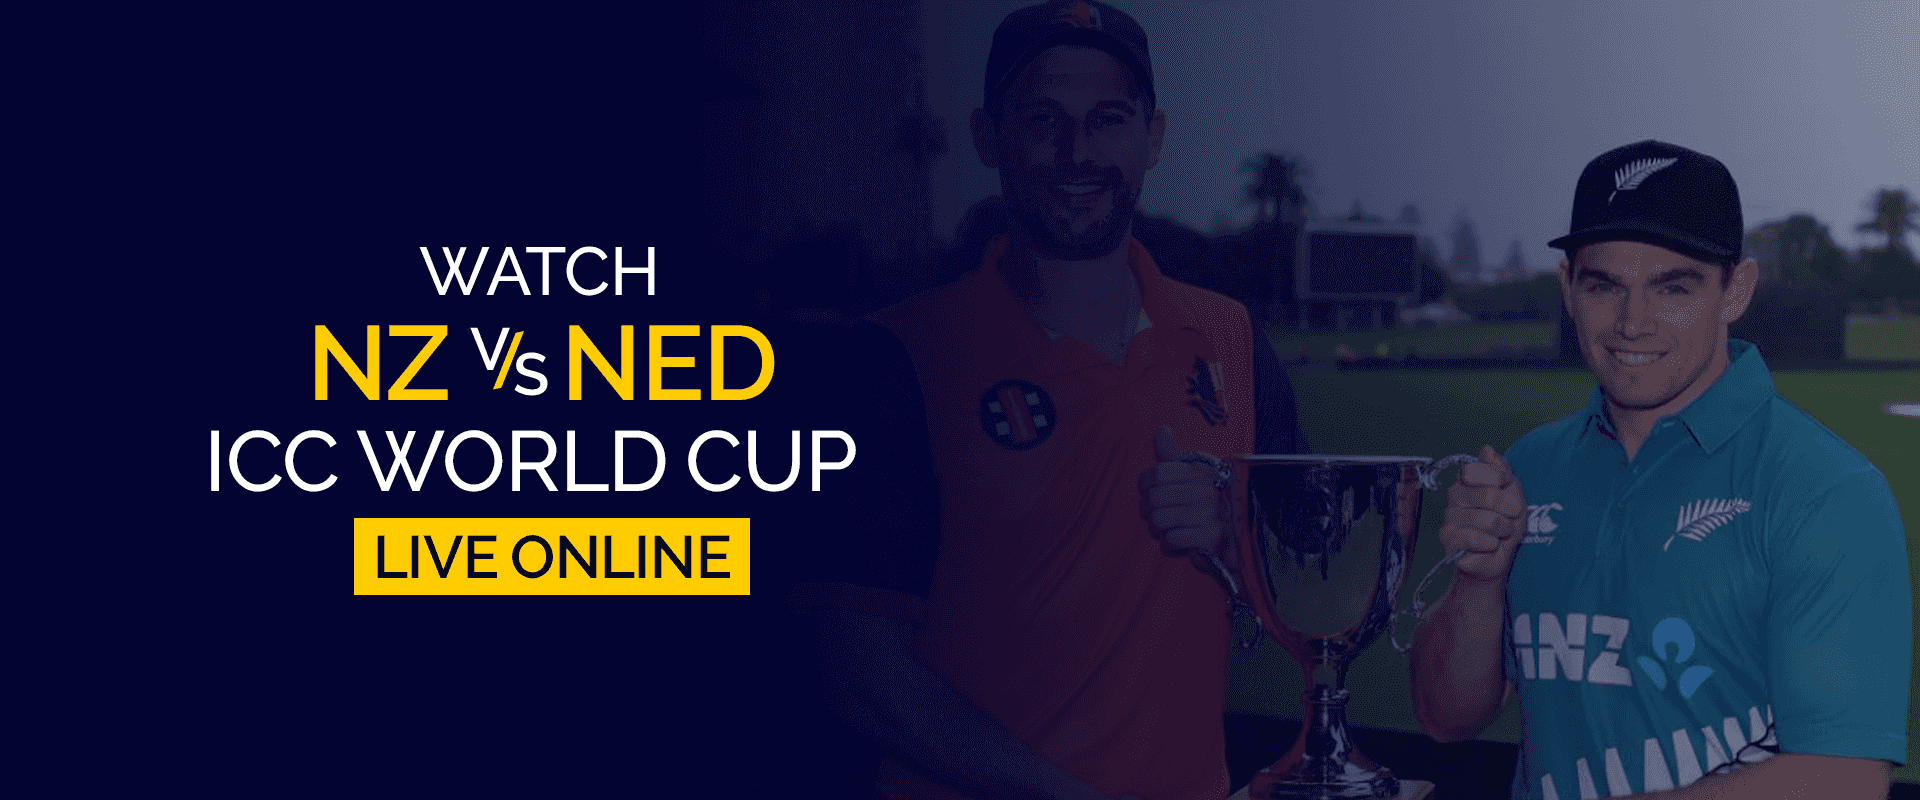 Guarda la Coppa del mondo NZ vs NED ICC in diretta online